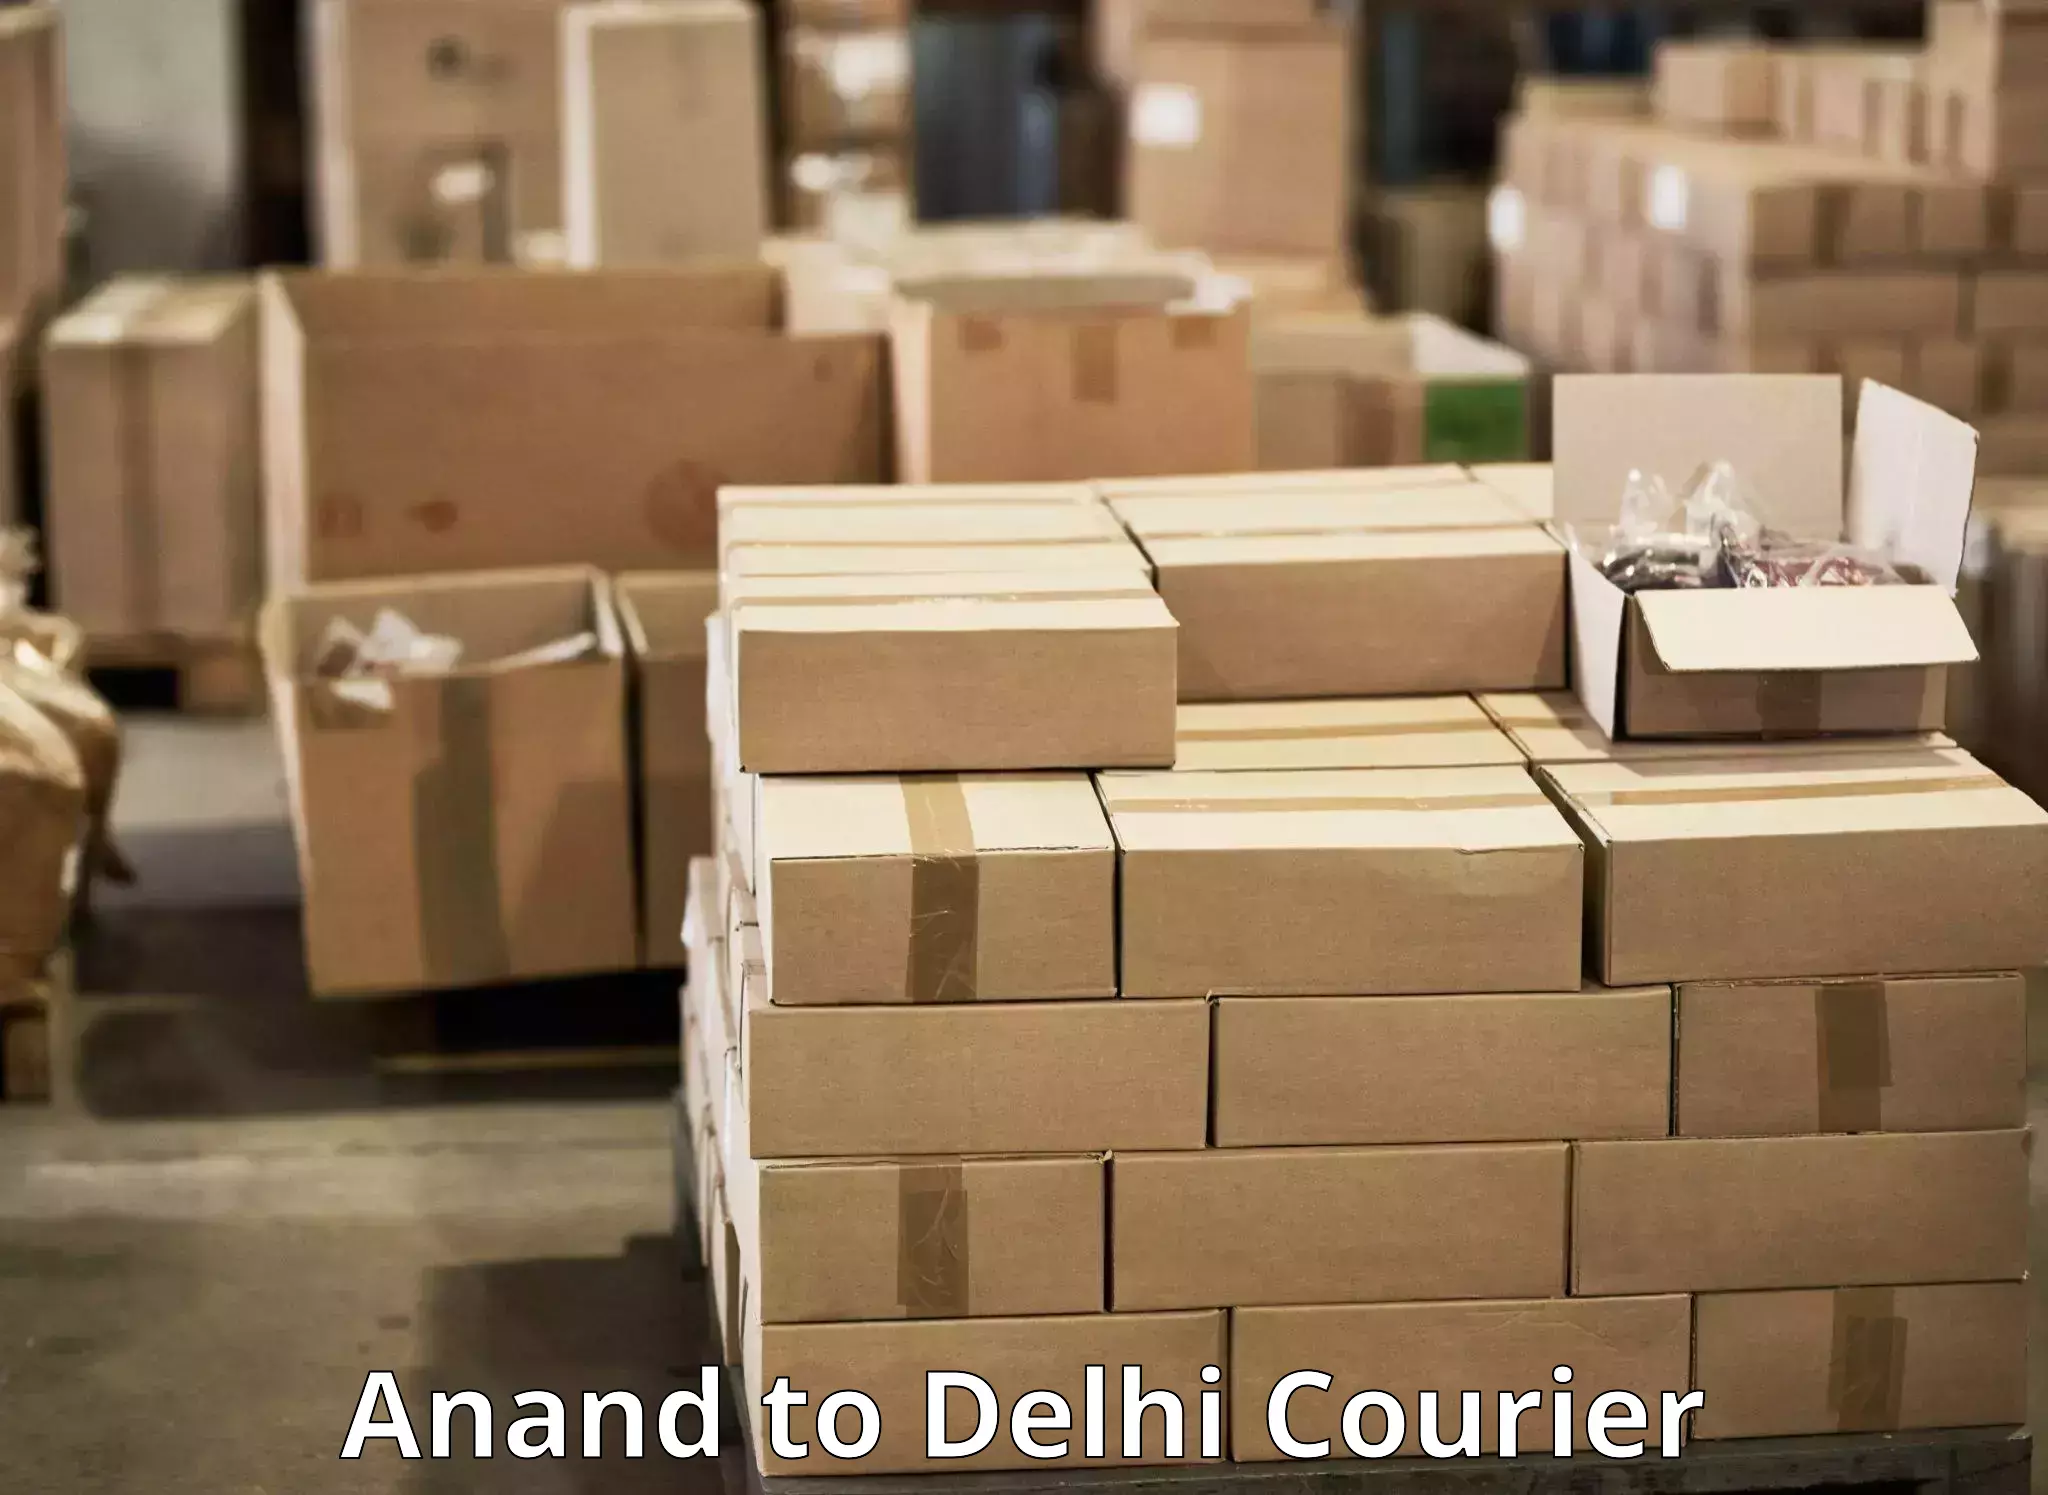 Courier service comparison Anand to Jamia Millia Islamia New Delhi